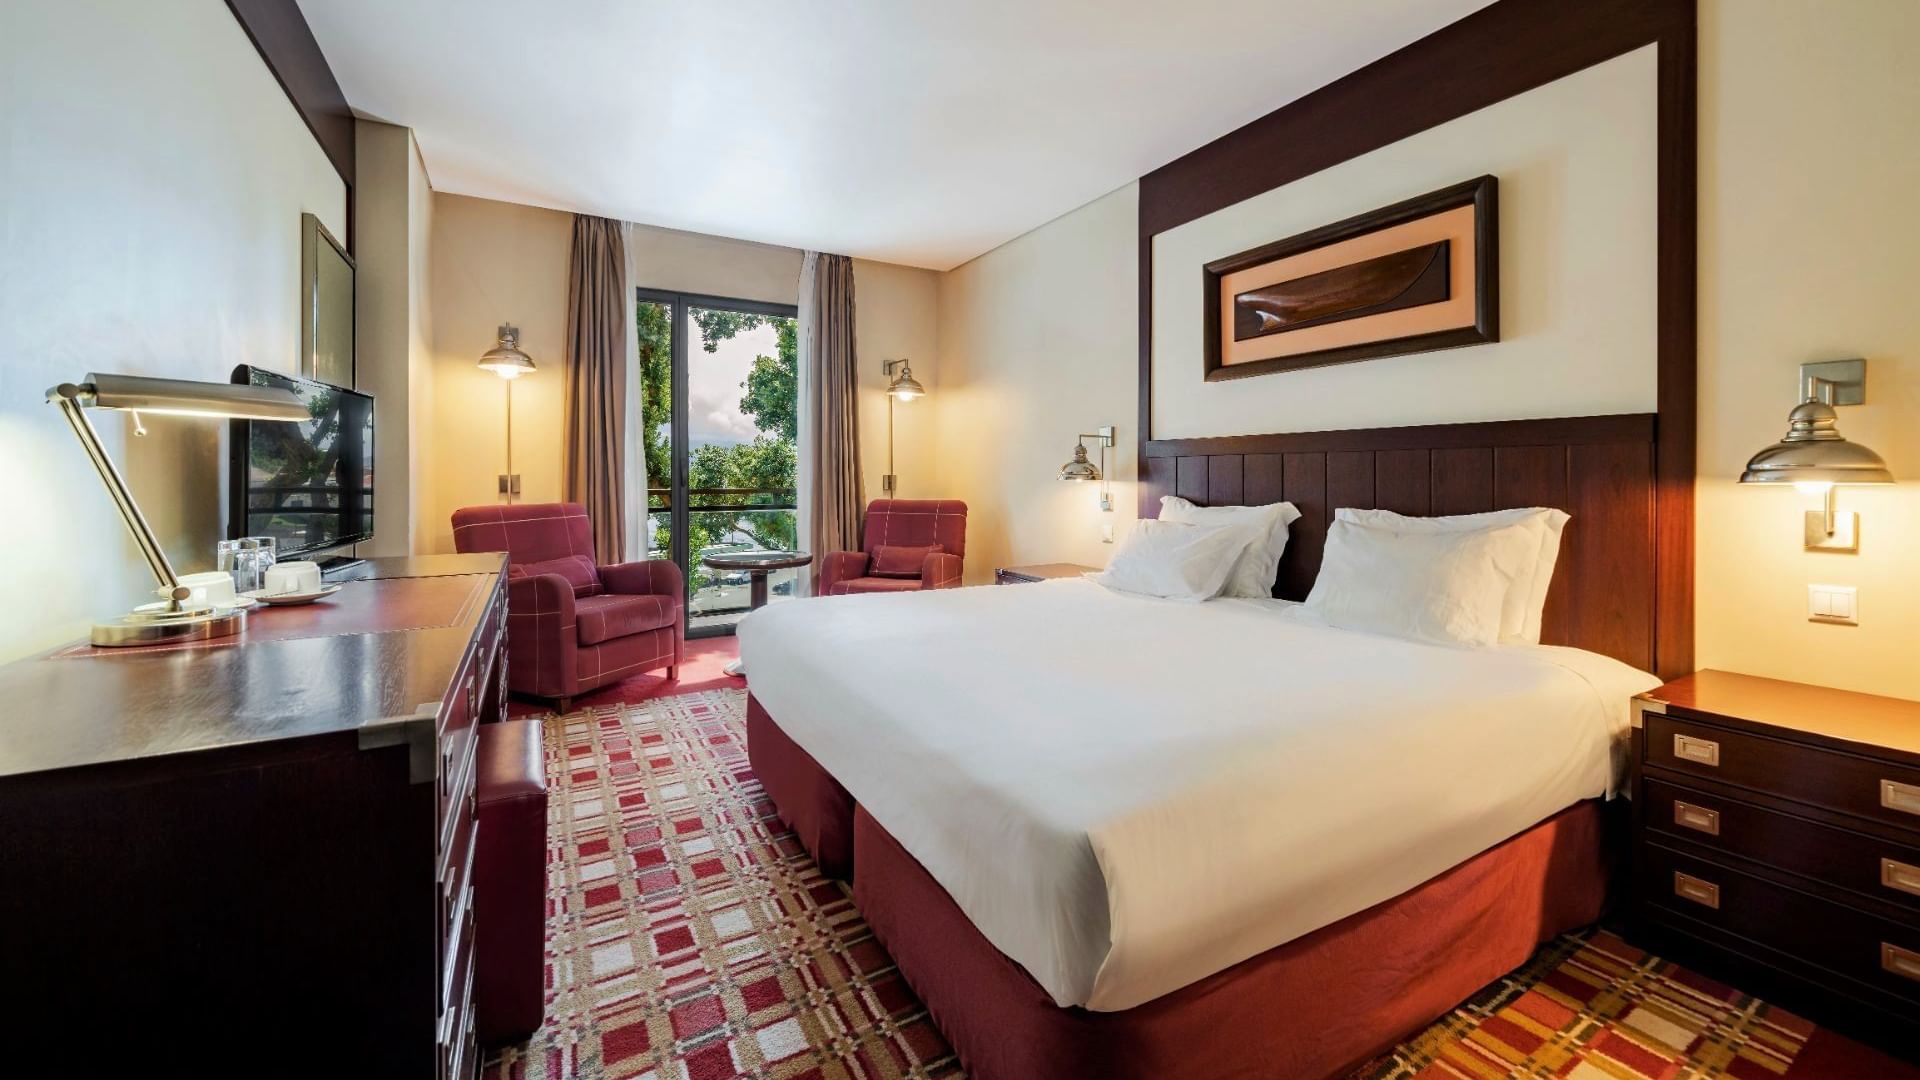 Bed in Standard room with reddish interior, Bensaude Hotels